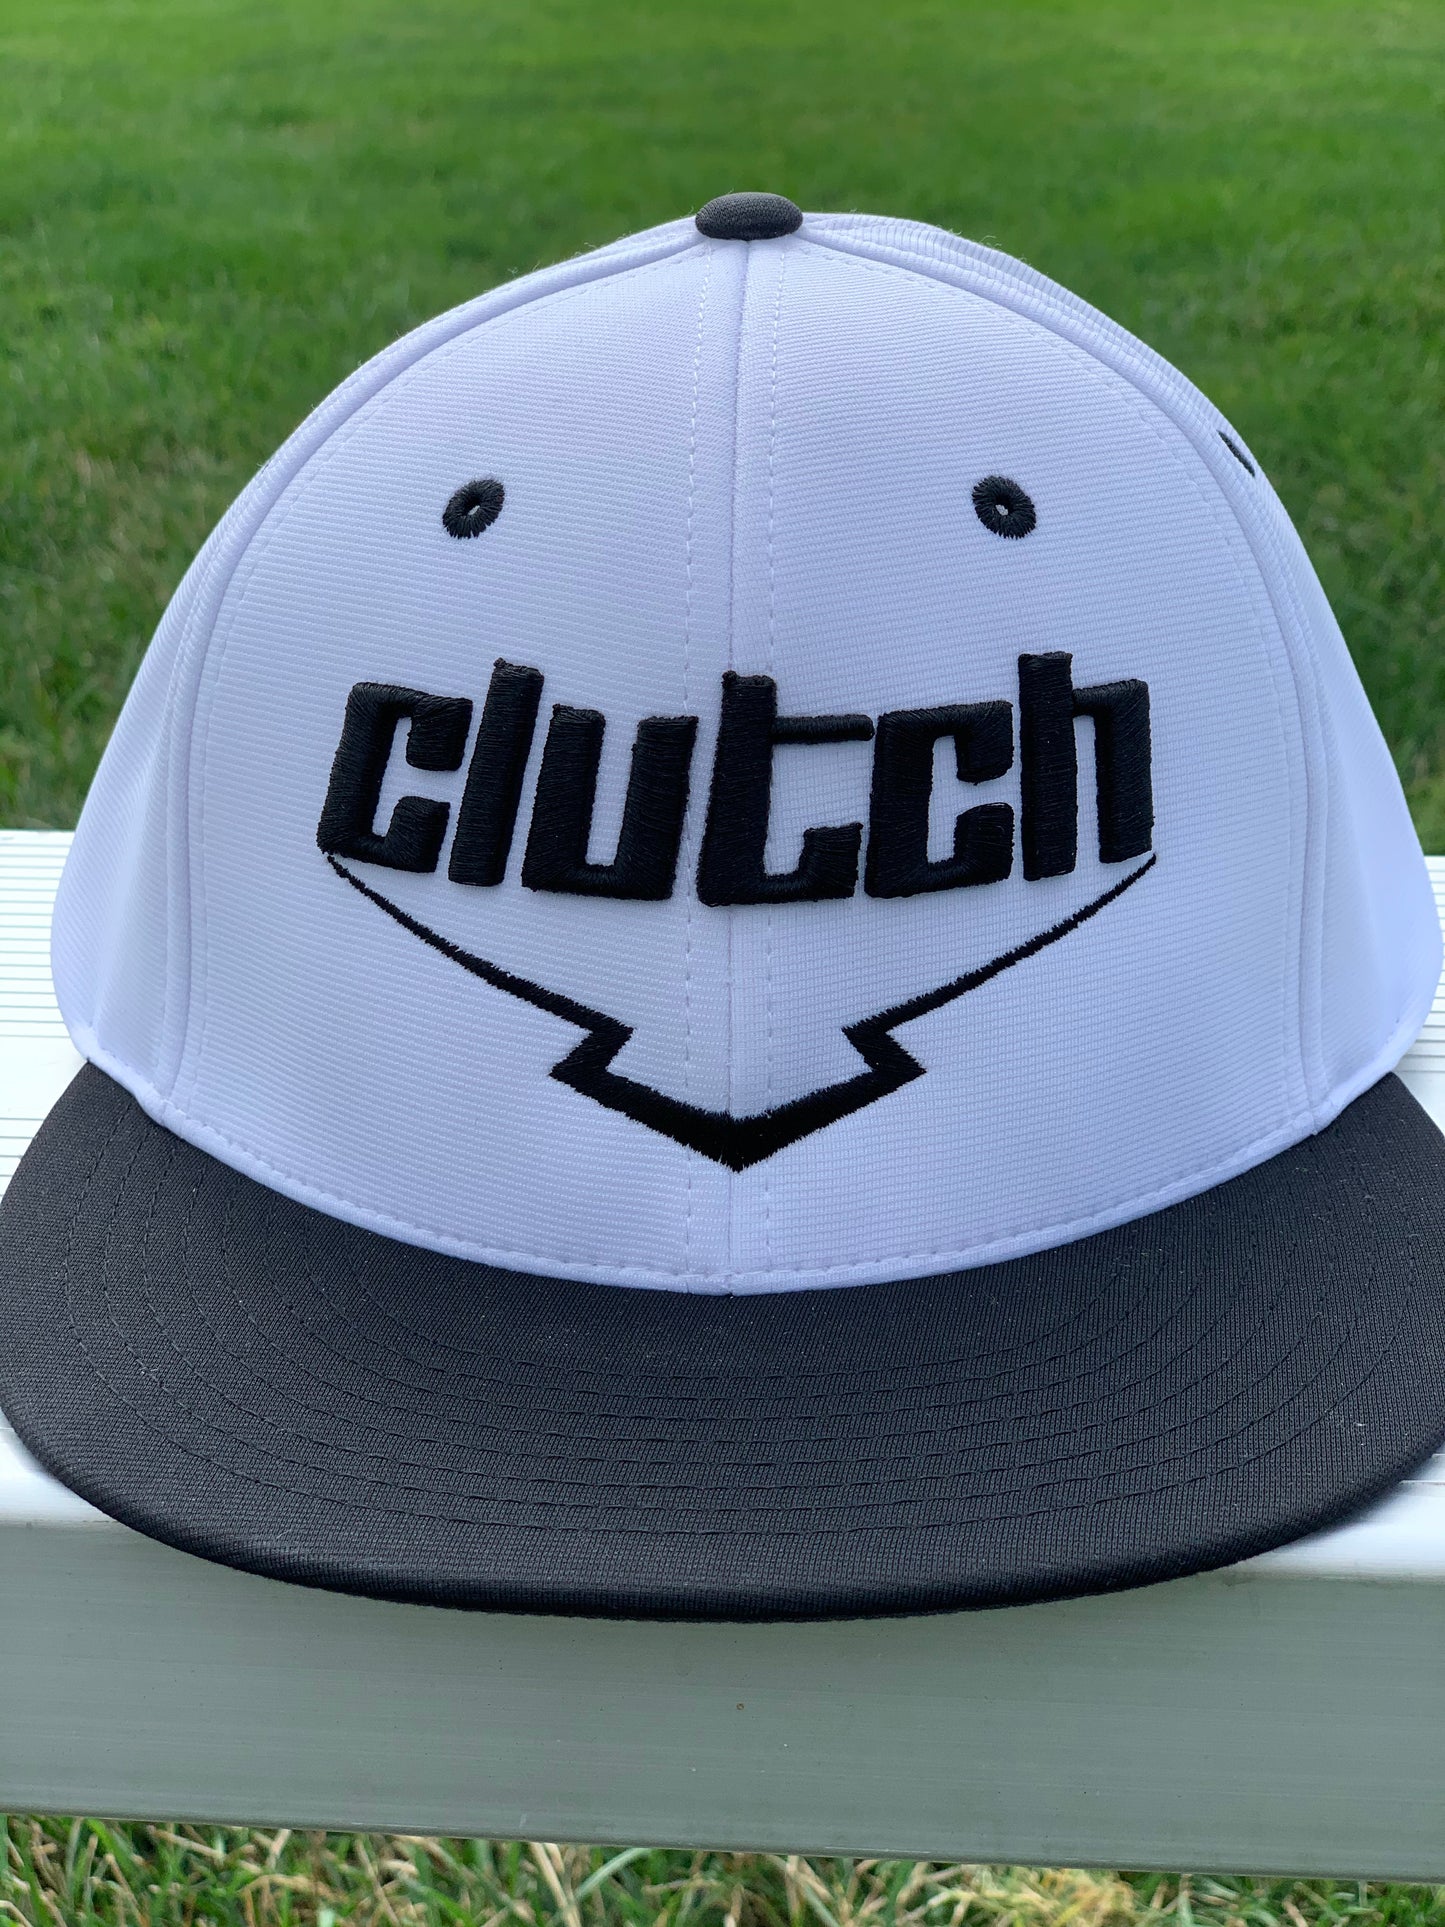 Clutch Logo Hat - White